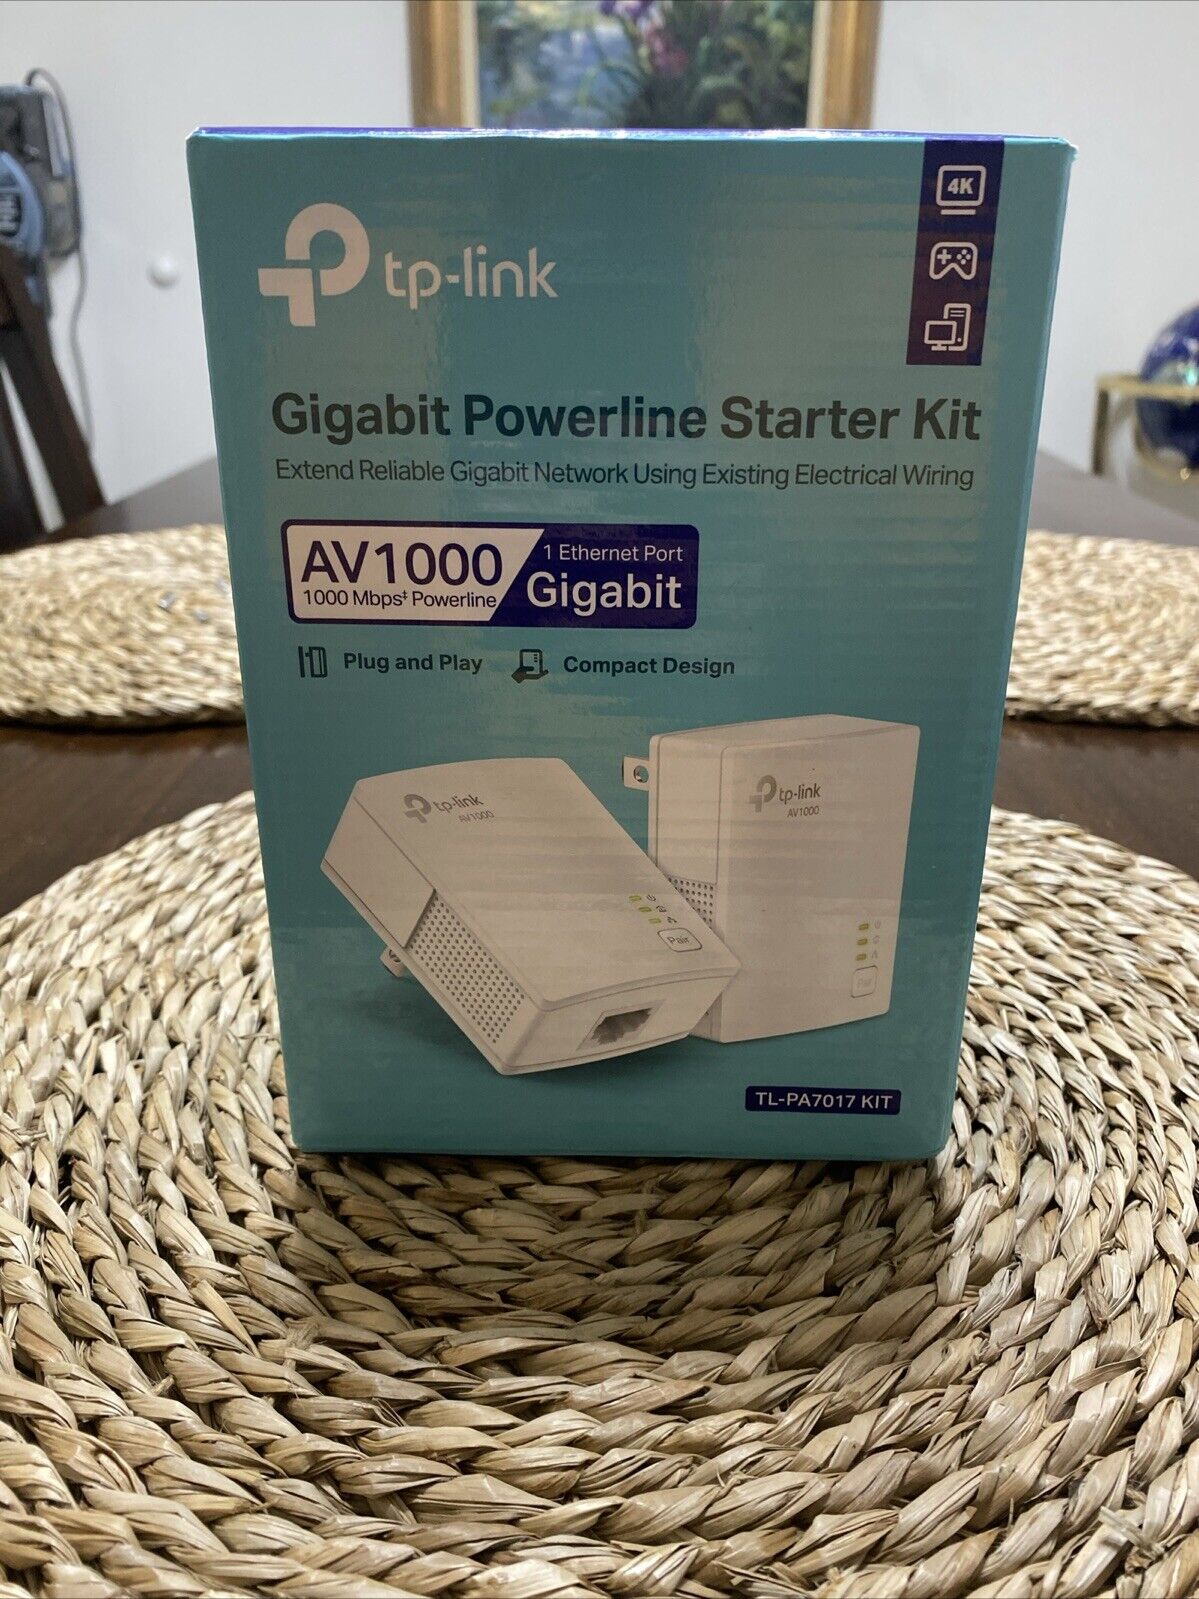 TP-Link AV1000 Gigabit Powerline Starter Kit (TL-PA7017 KIT)